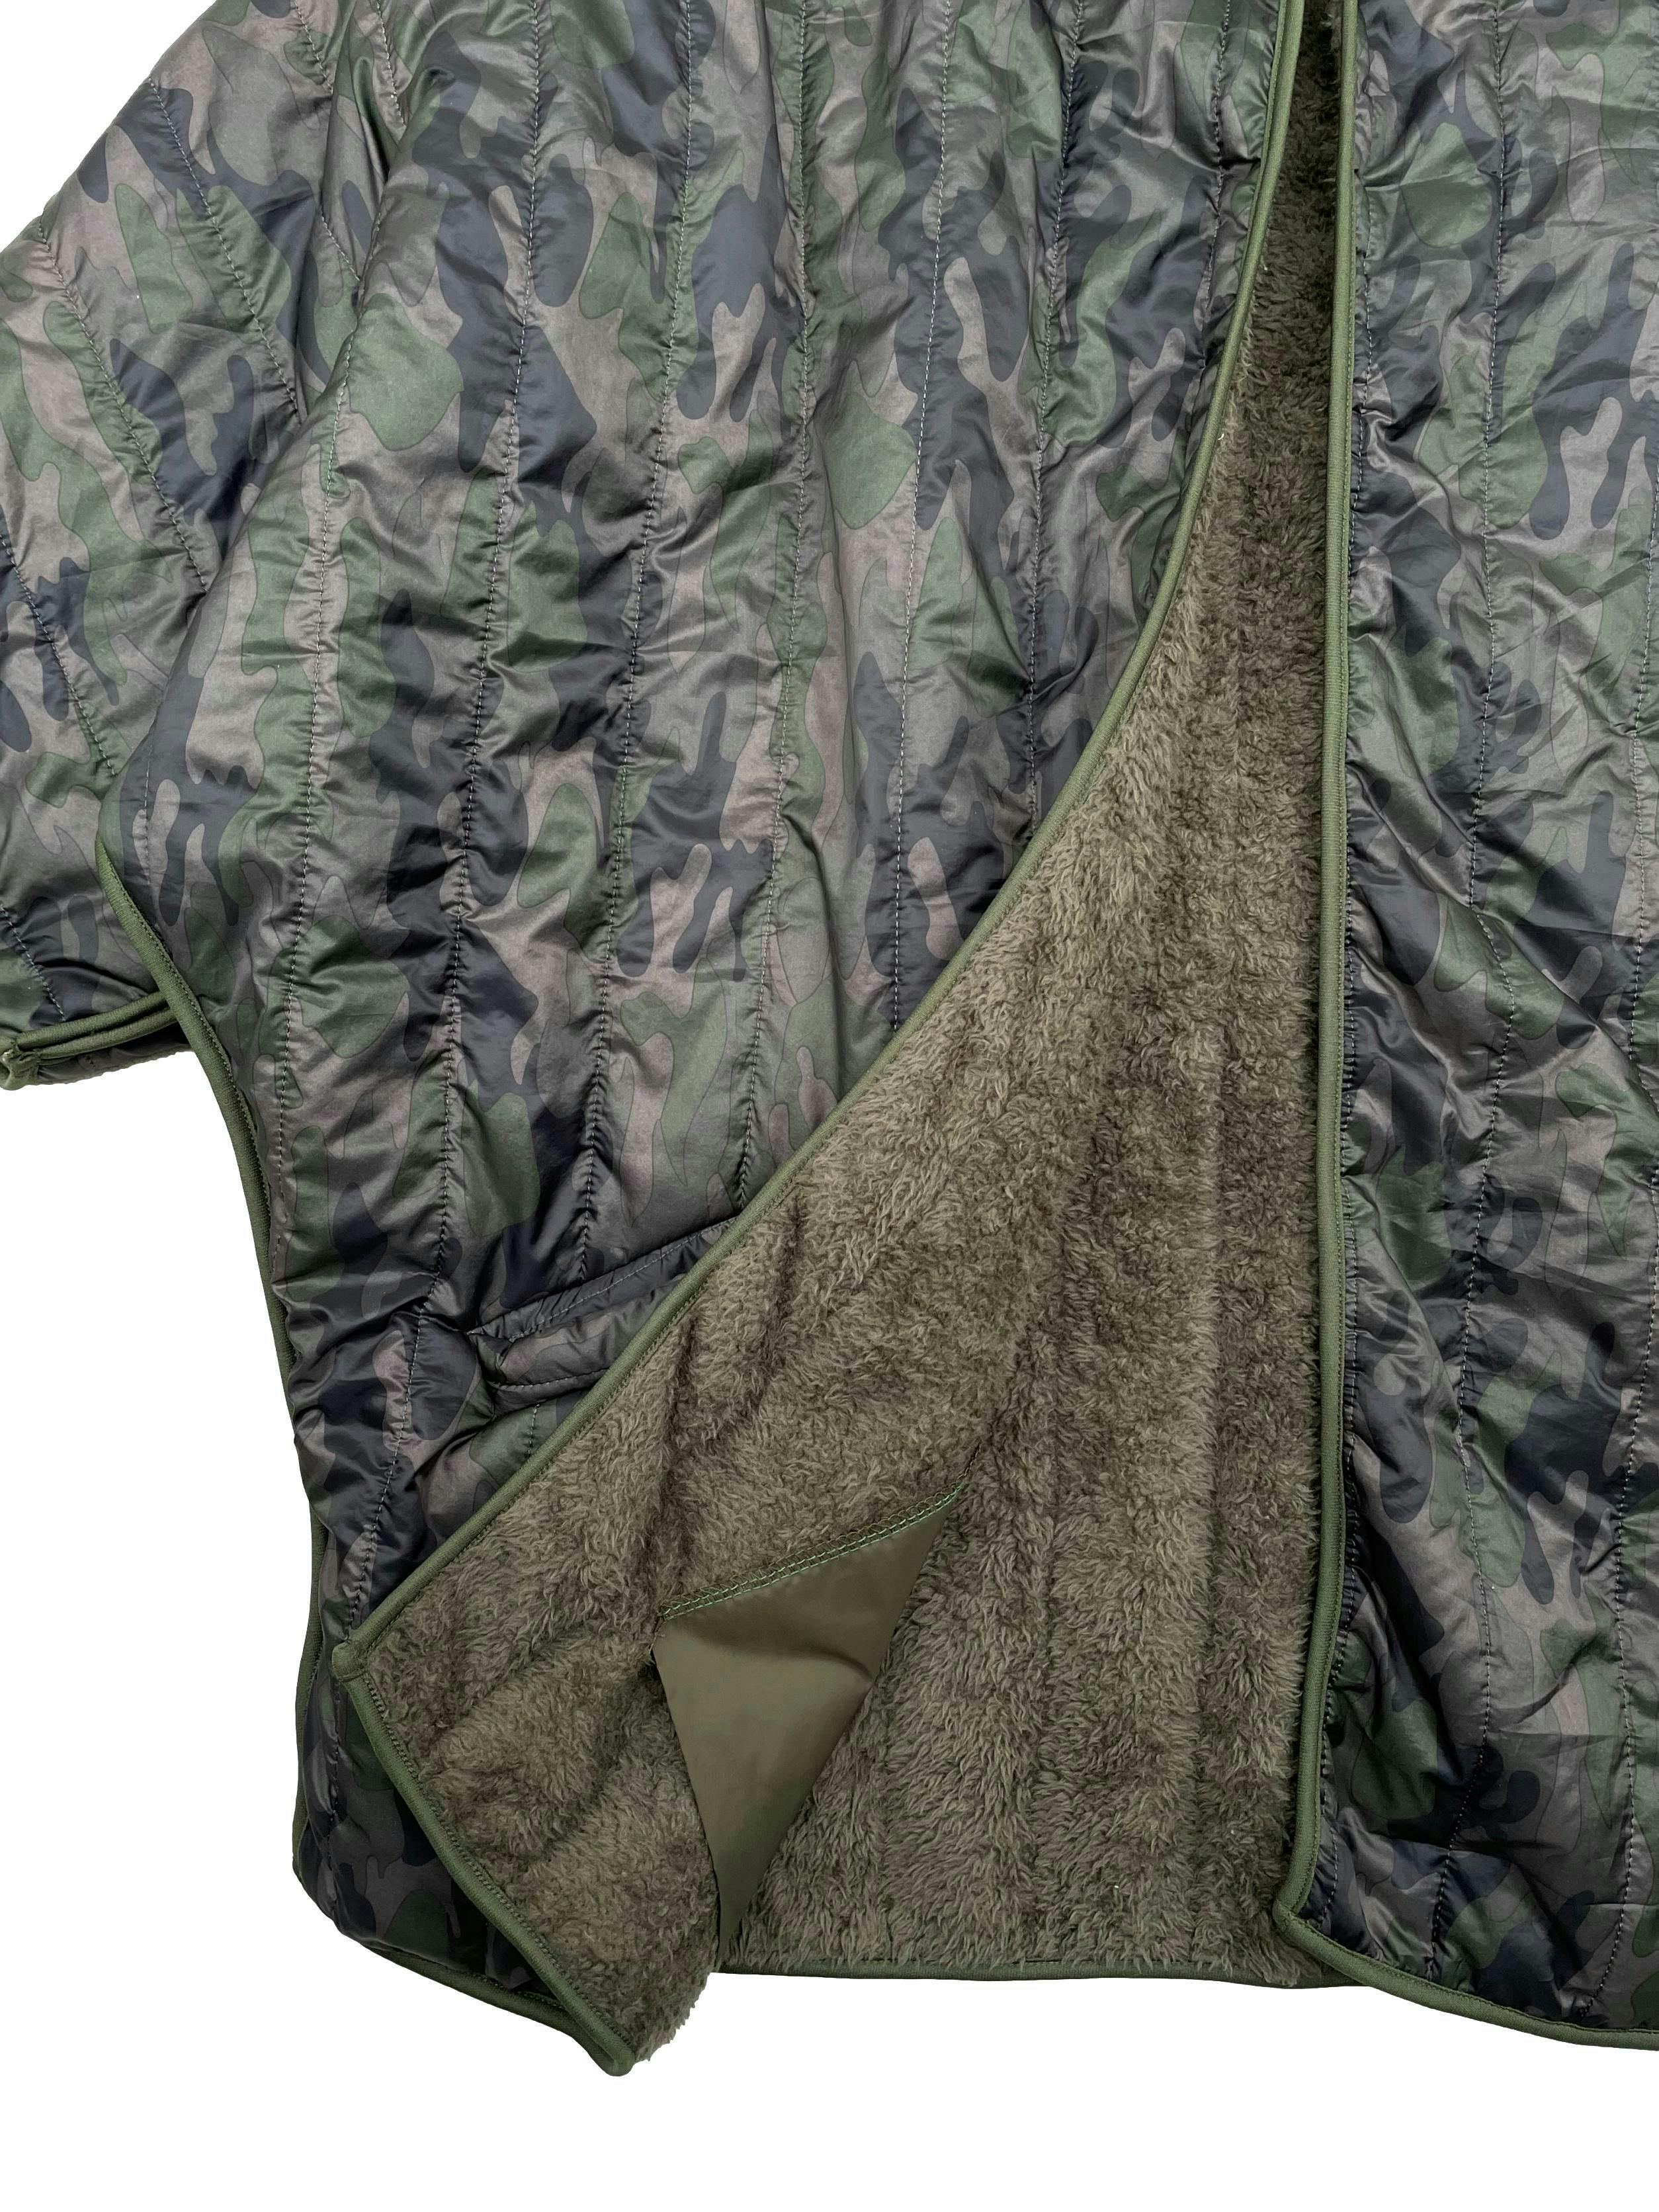 Casaca estilo impermeable estampado militar con forro de peluche, corte oversized, cuello alto y bolsillos laterales. Ancho 120cm Largo 75cm